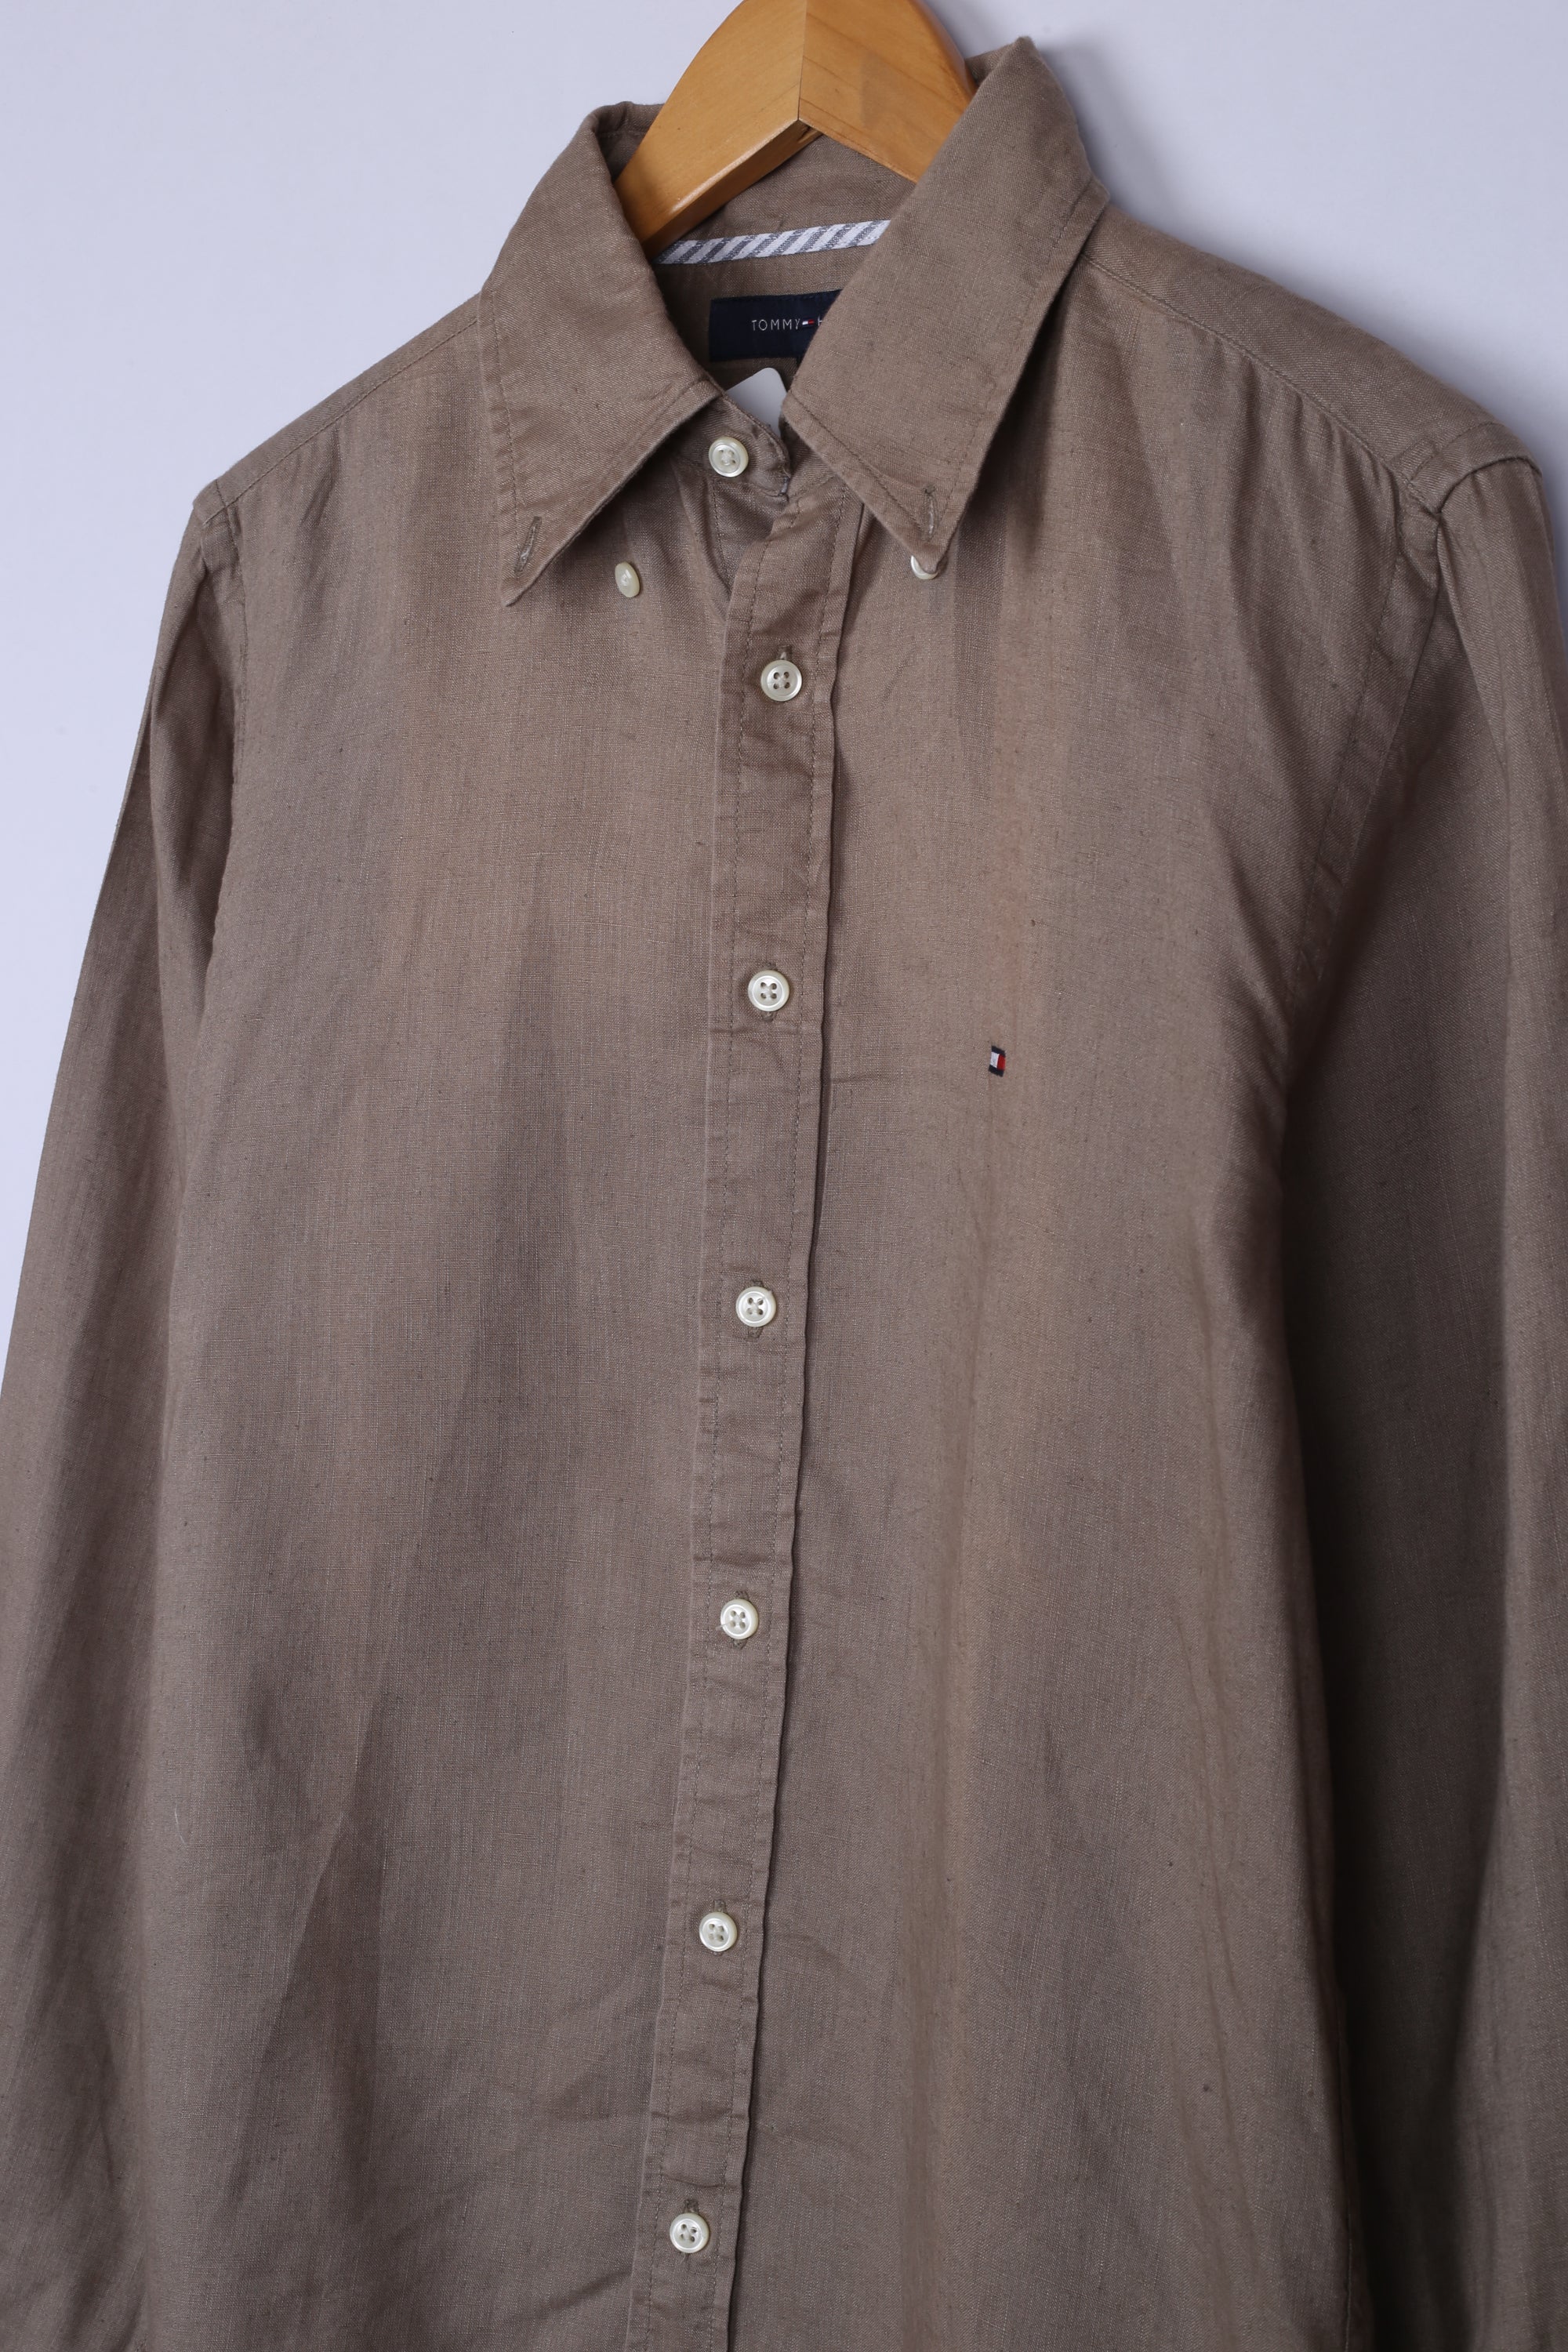 Vintage Tommy Hilfiger Shirt Brown